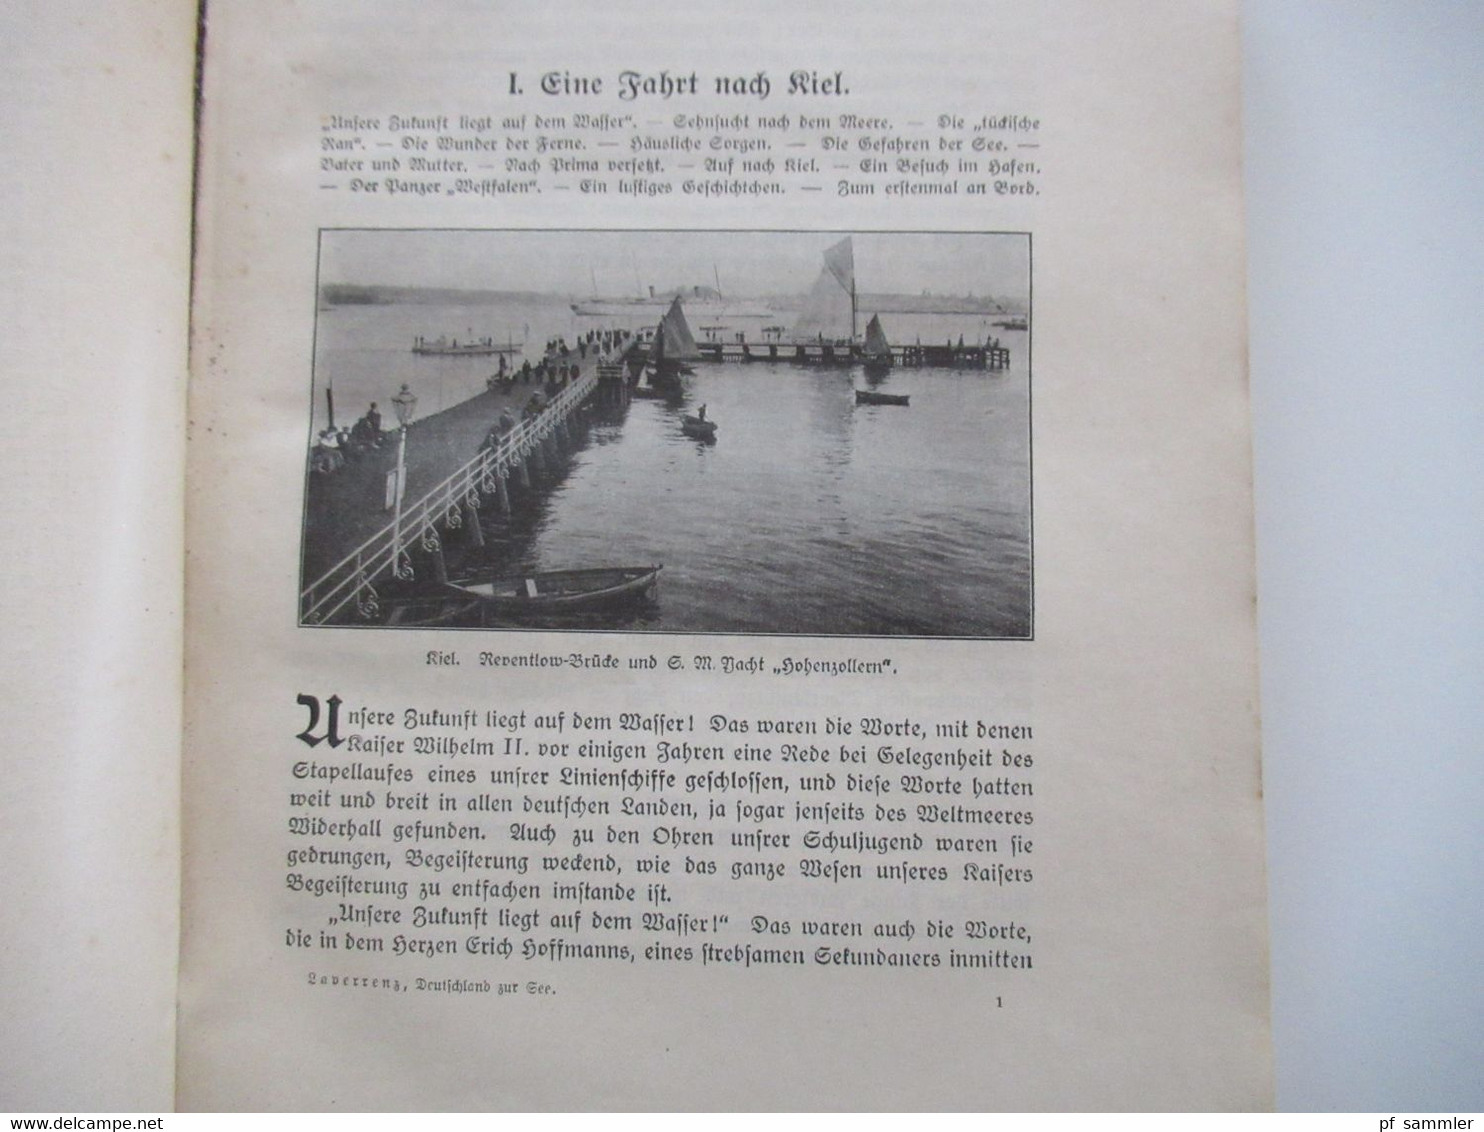 Deutschland zur See. Bilder aus dem deutschen Kriegsschiffleben von Victor Laverrenz um 1915